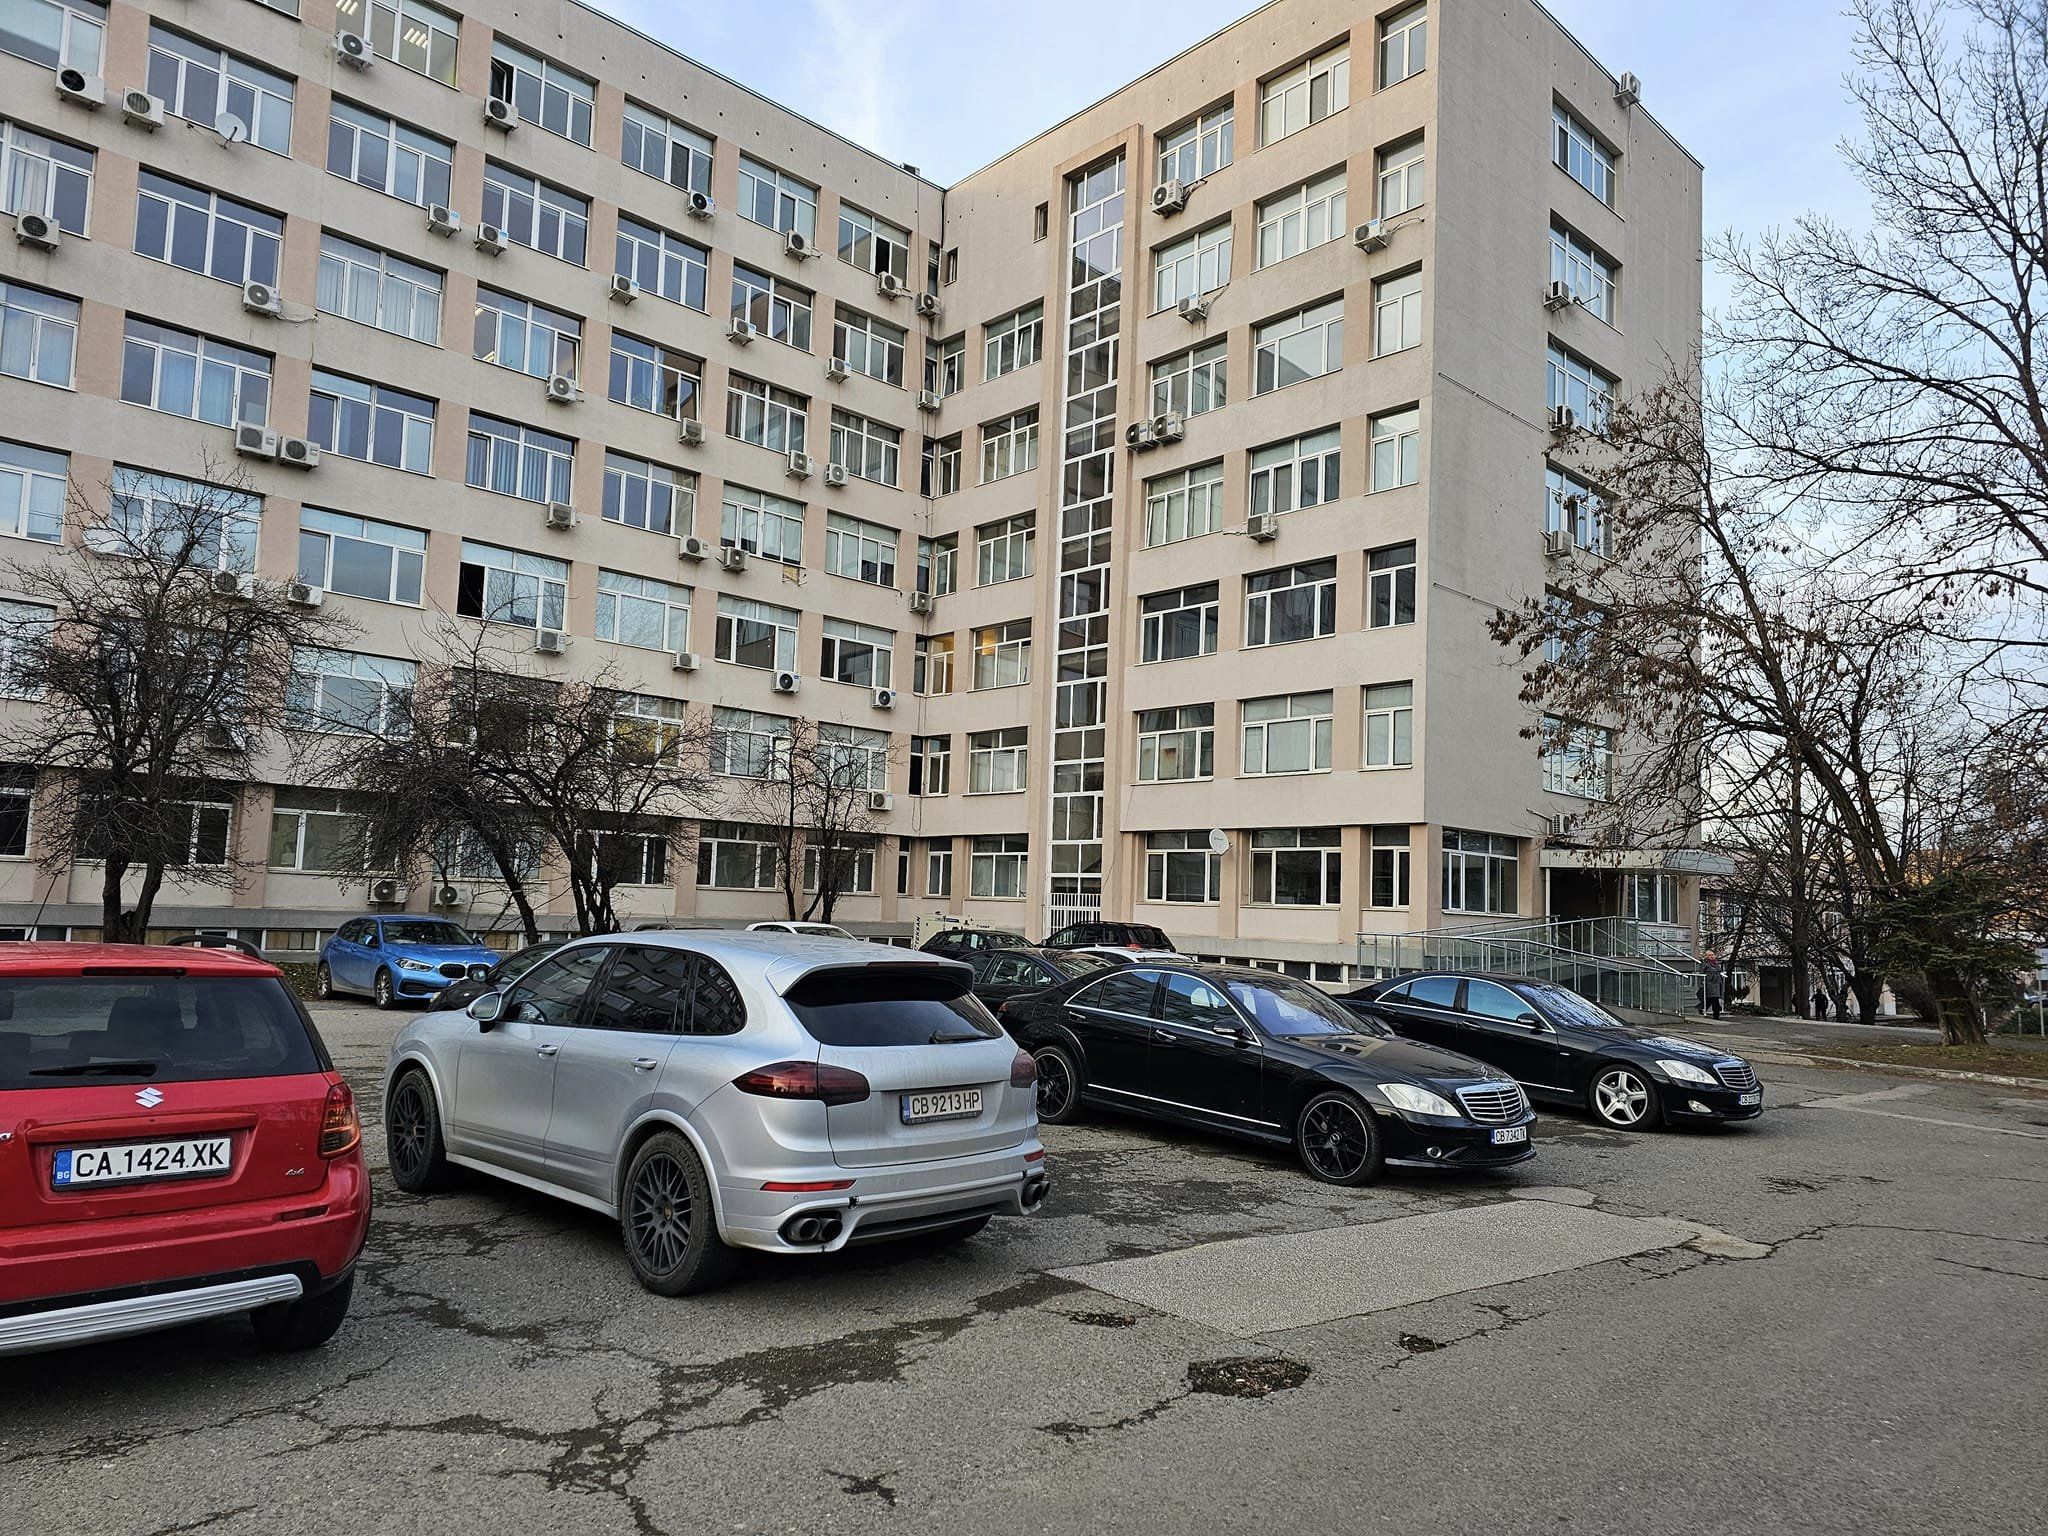 Голям брой луксозни автомобили на паркинга пред сграда в която